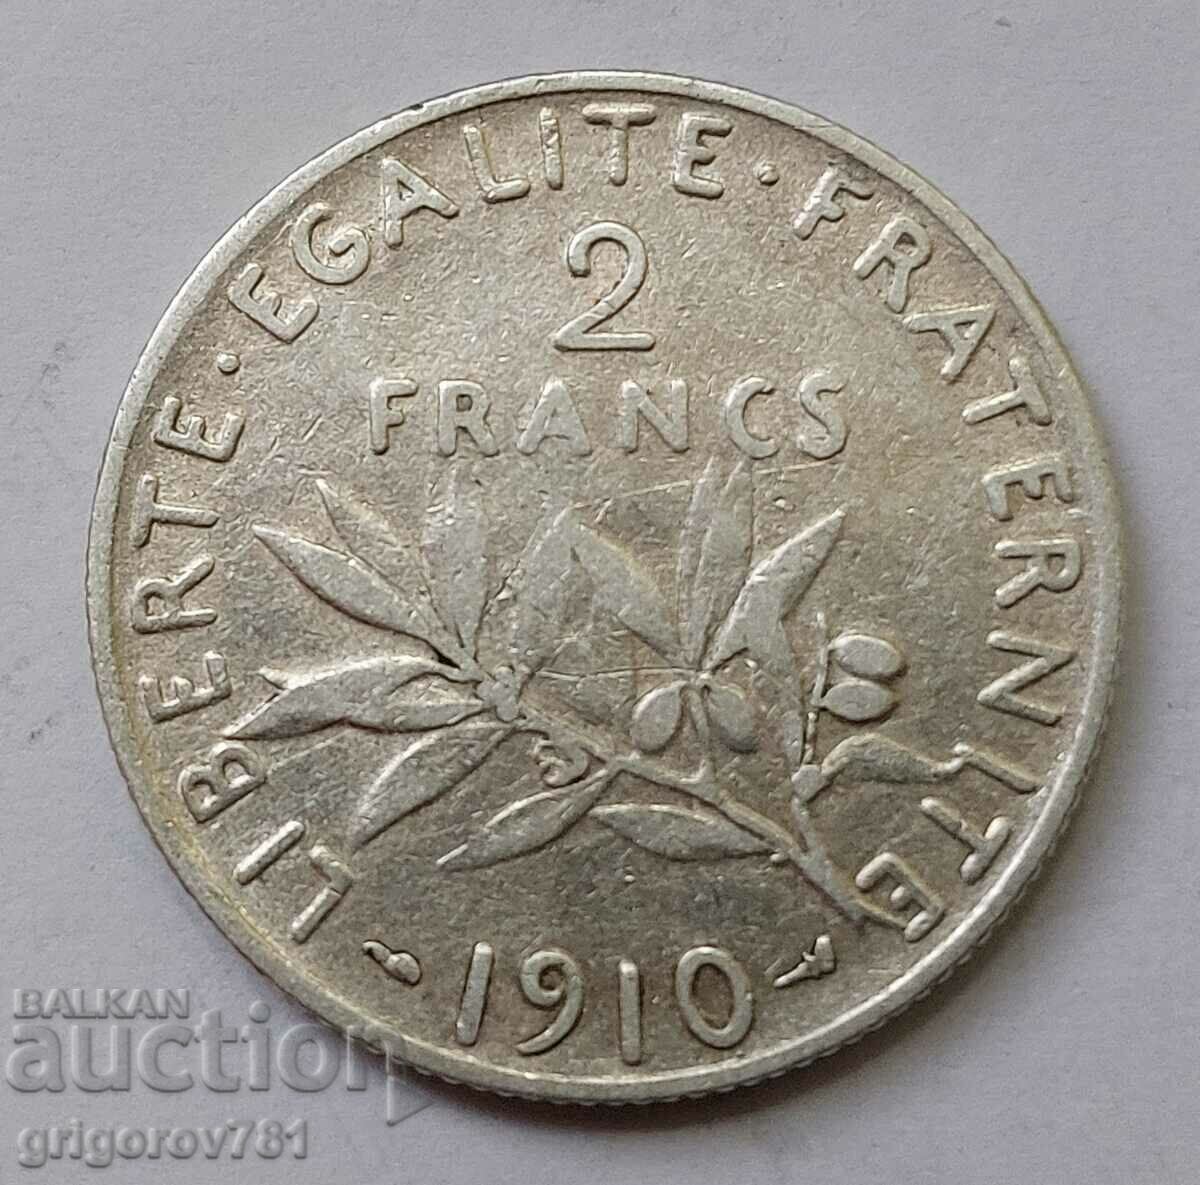 2 Φράγκα Ασήμι Γαλλία 1910 - Ασημένιο νόμισμα #112